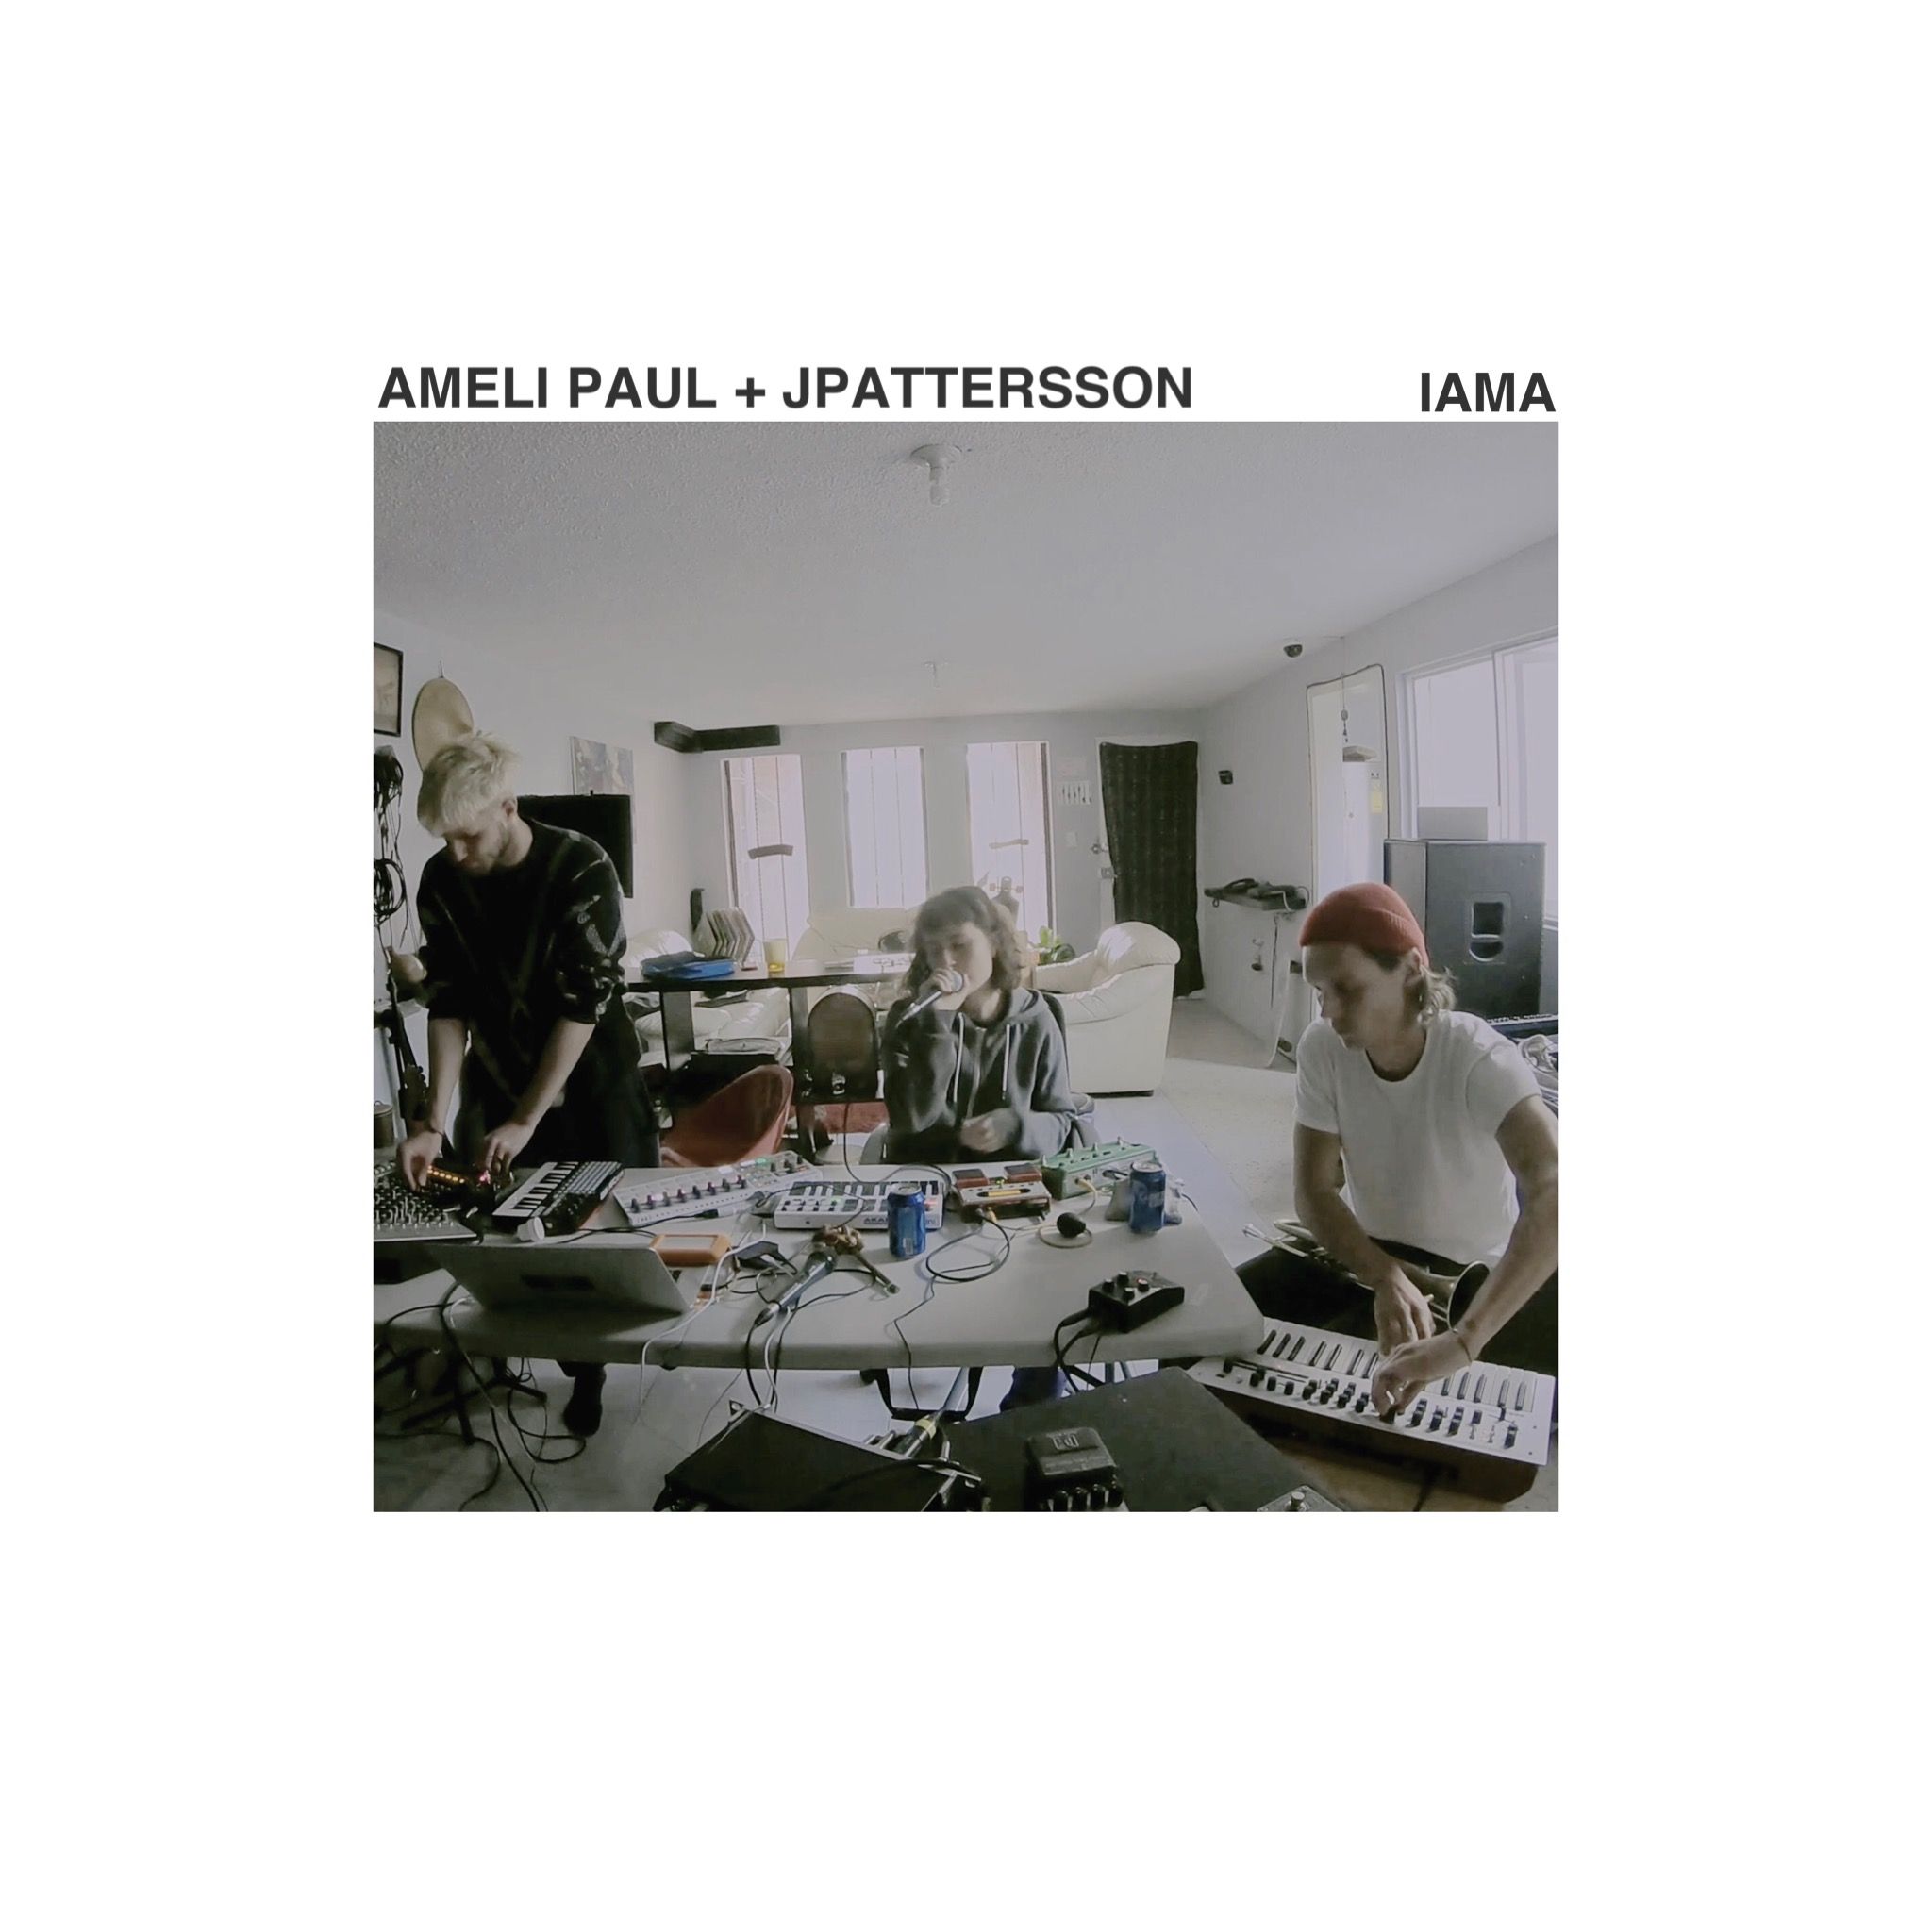 Télécharger Ameli Paul + JPattersson - Iama